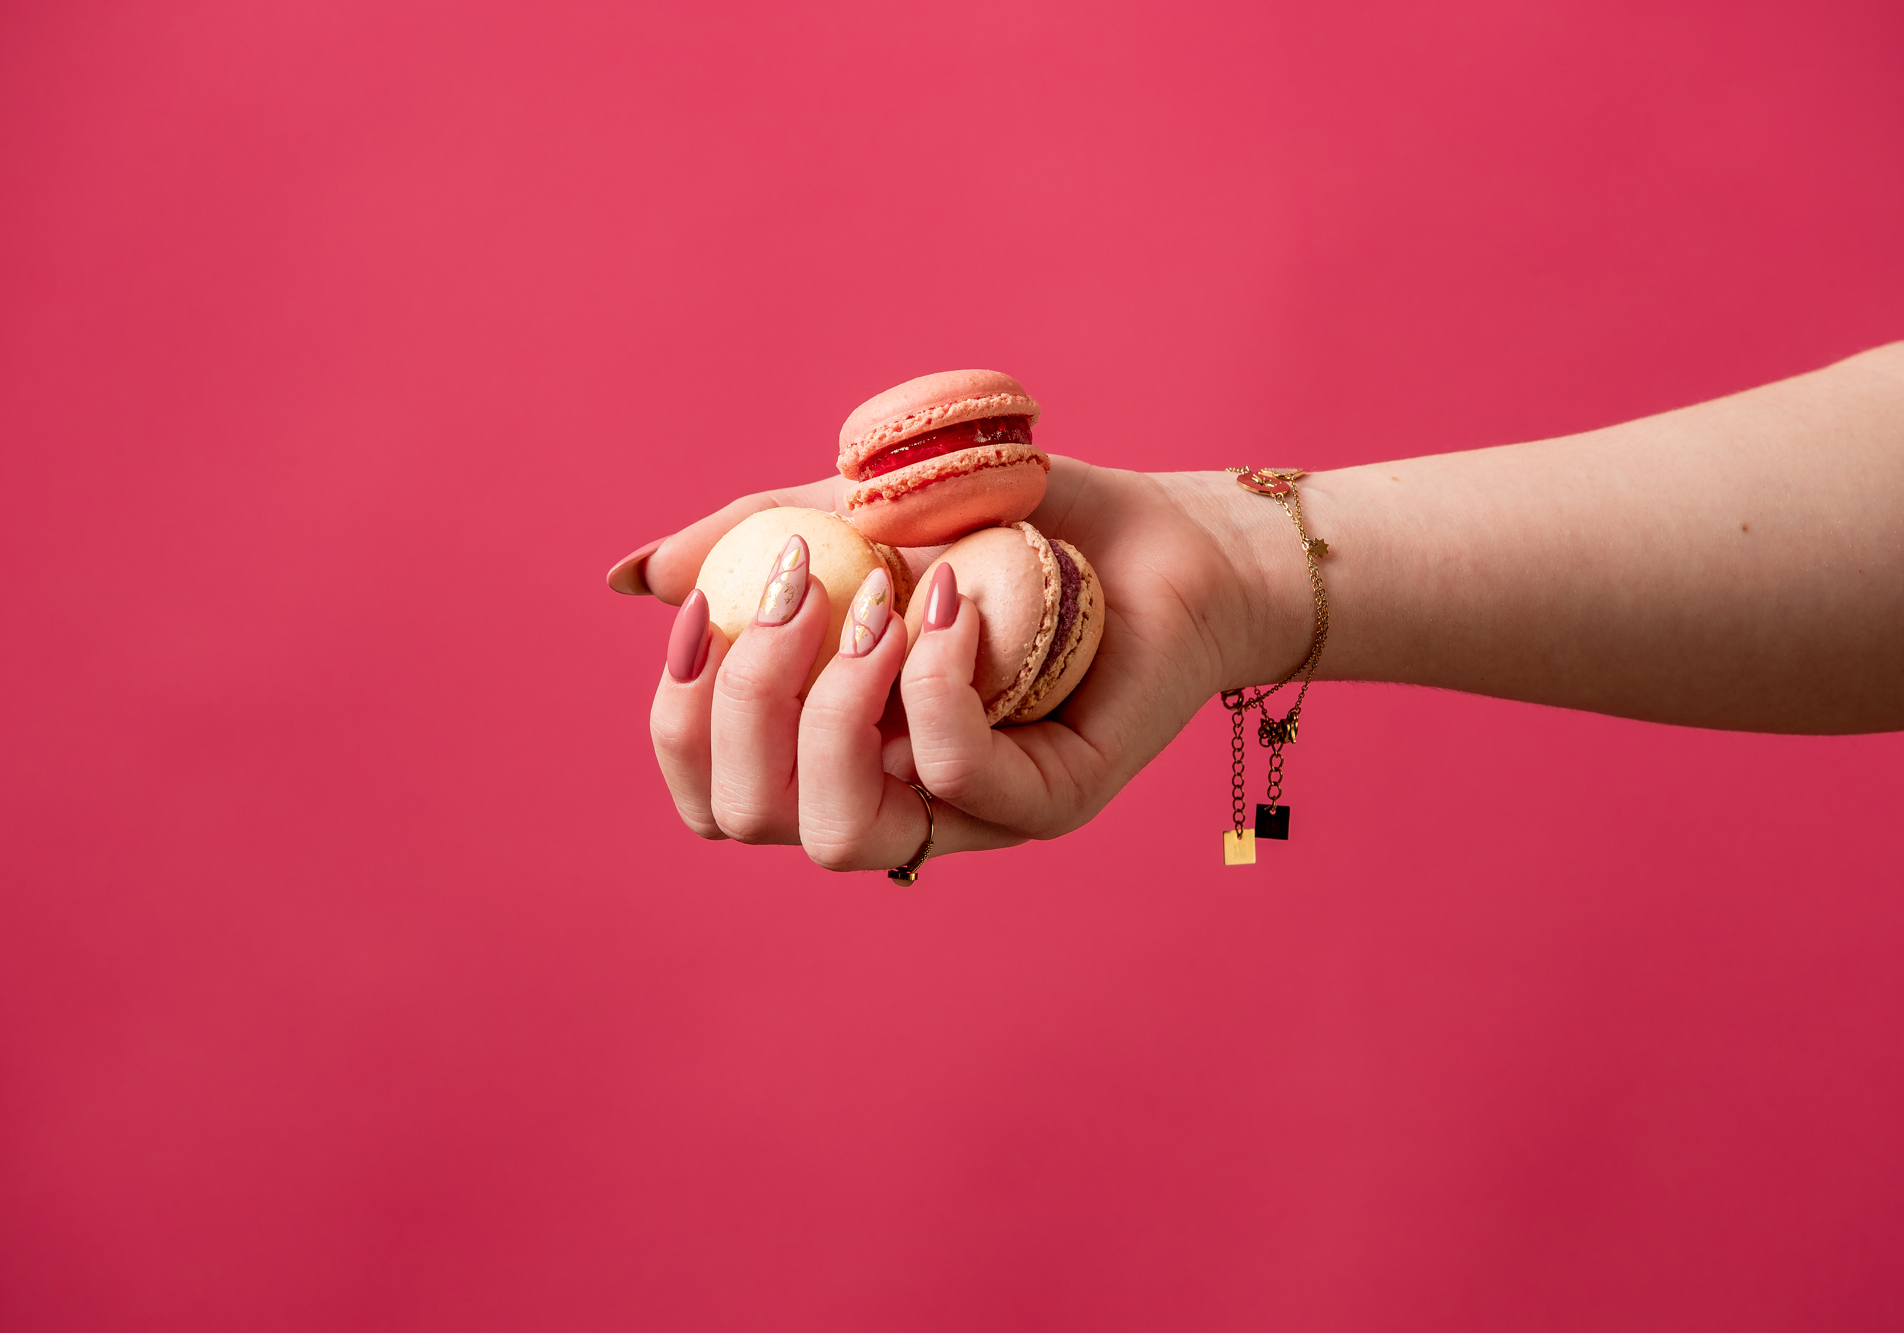 Réalisation d'une affiche publicitaire photo mettant en scène une main tenant des macaron avec une belle manucure sur un fond rose.